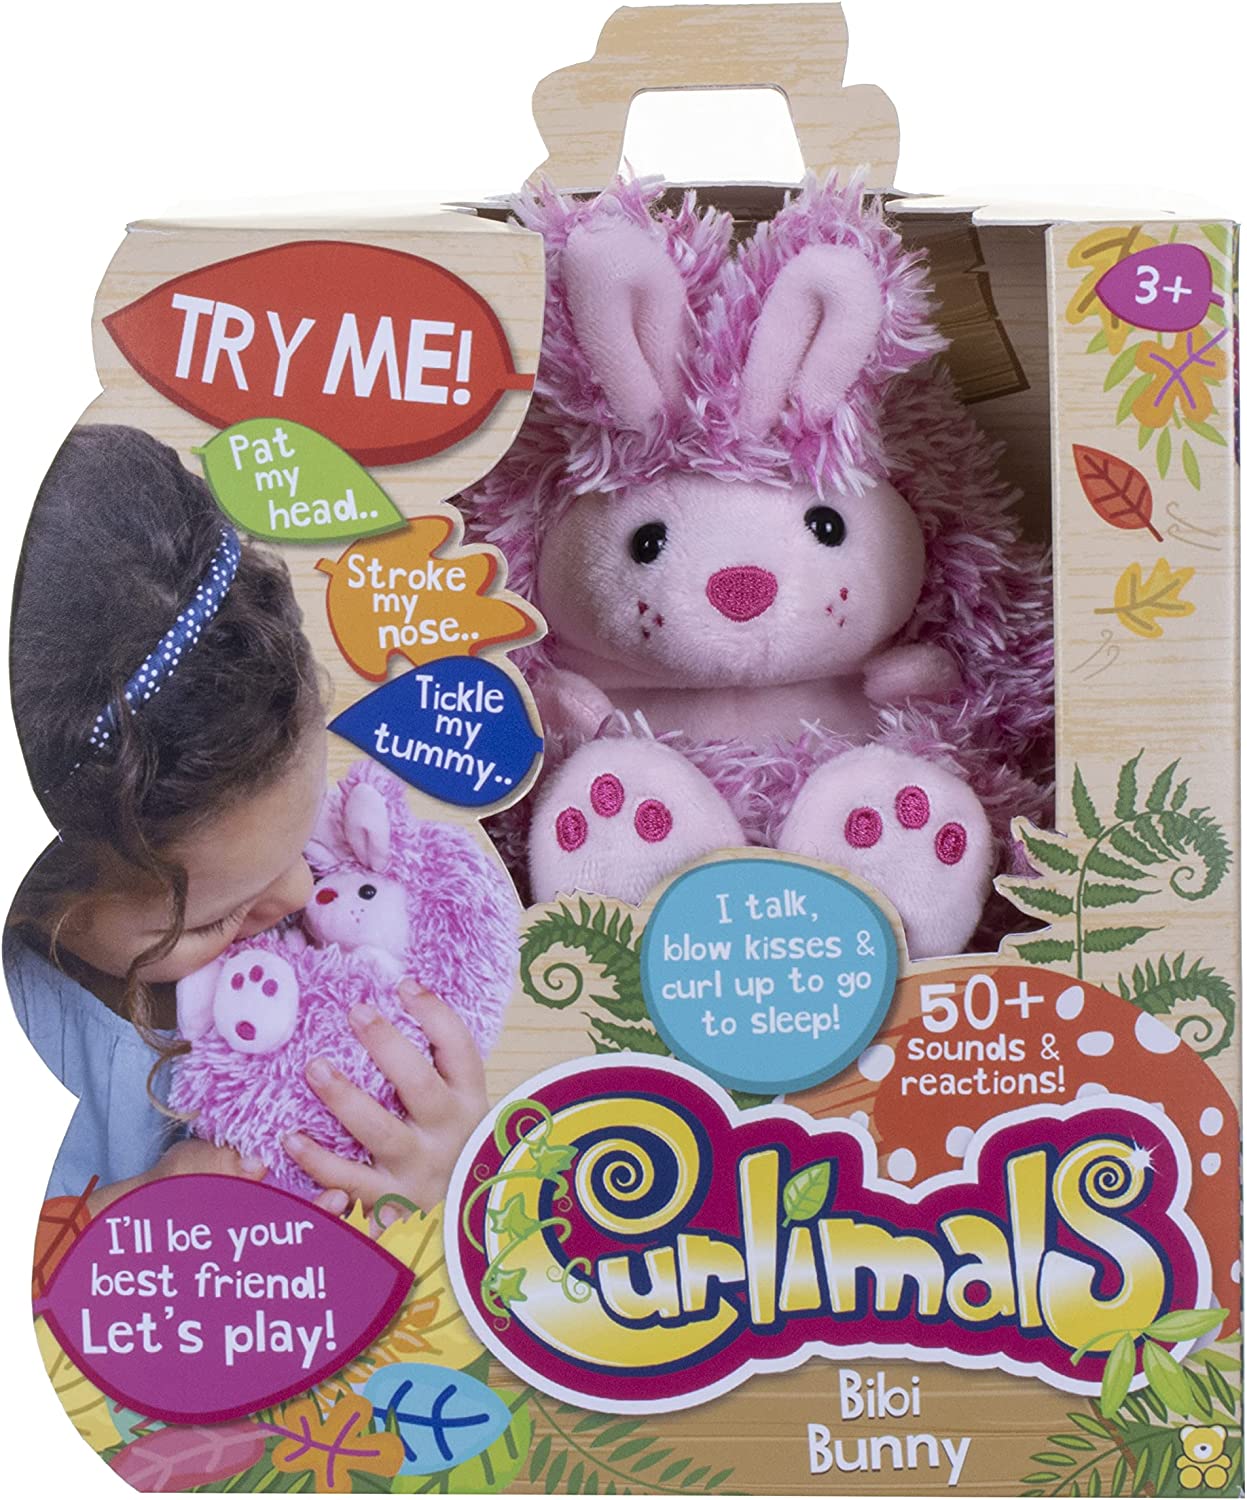 Curlimals Bibi The Bunny - Brinquedo interativo com mais de 50 sons e reações de responde